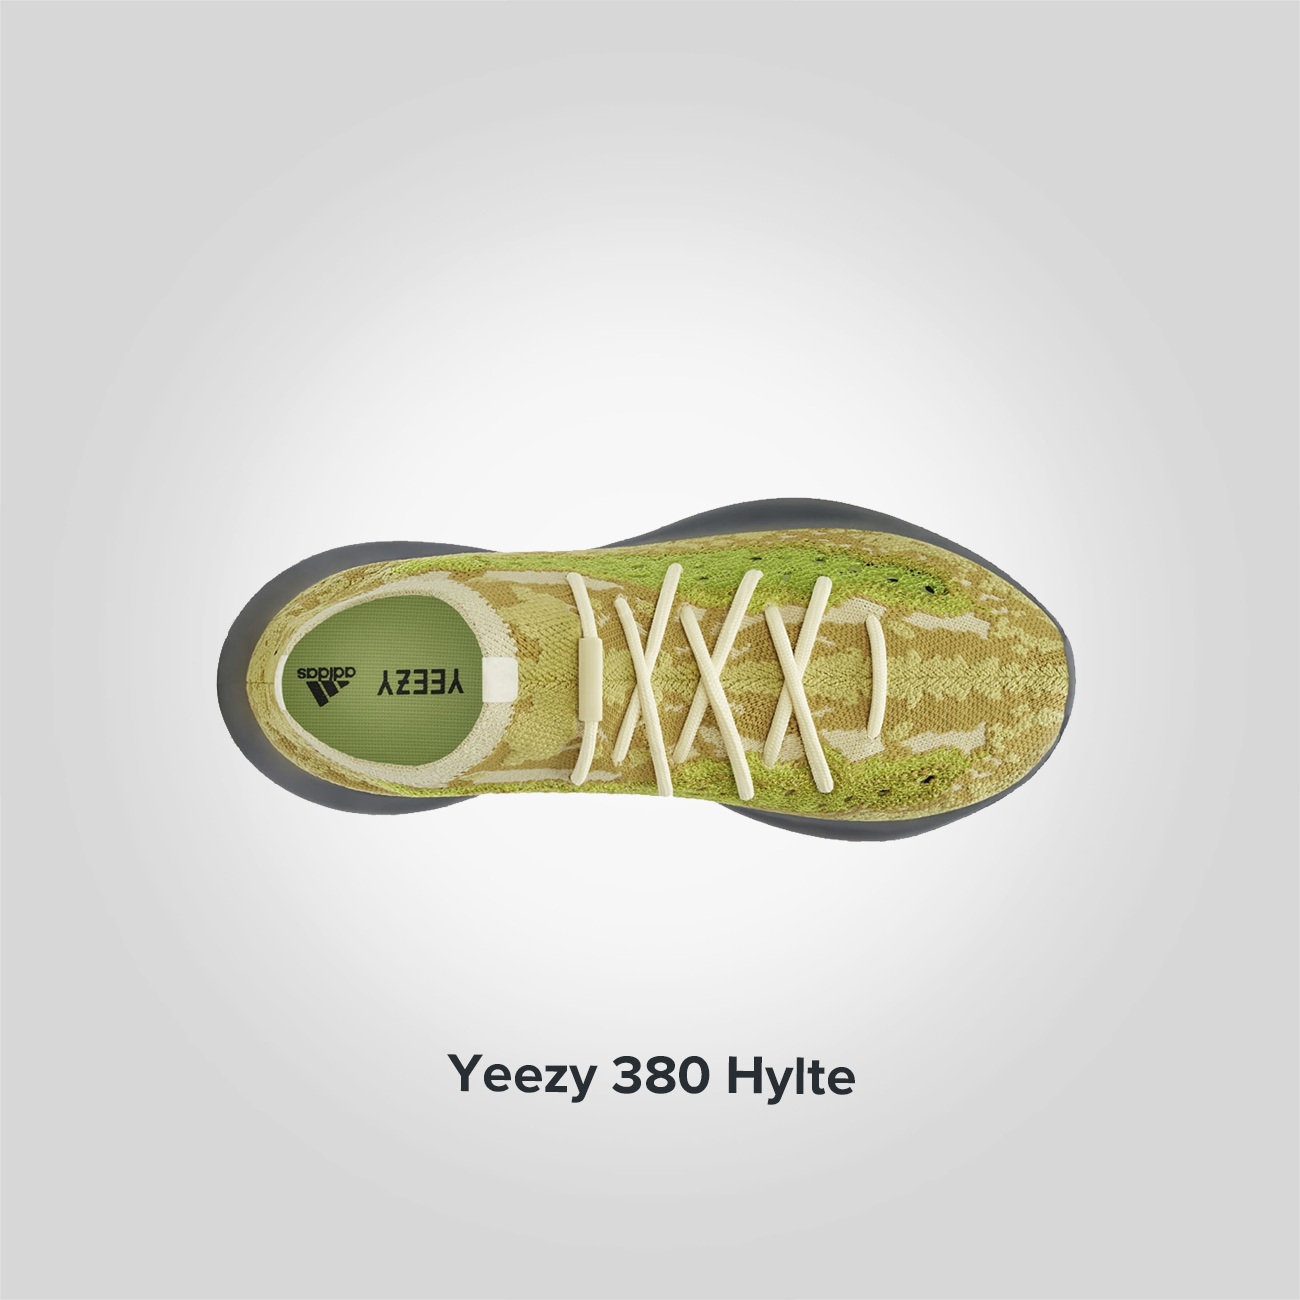 Yeezy 380 Hylte